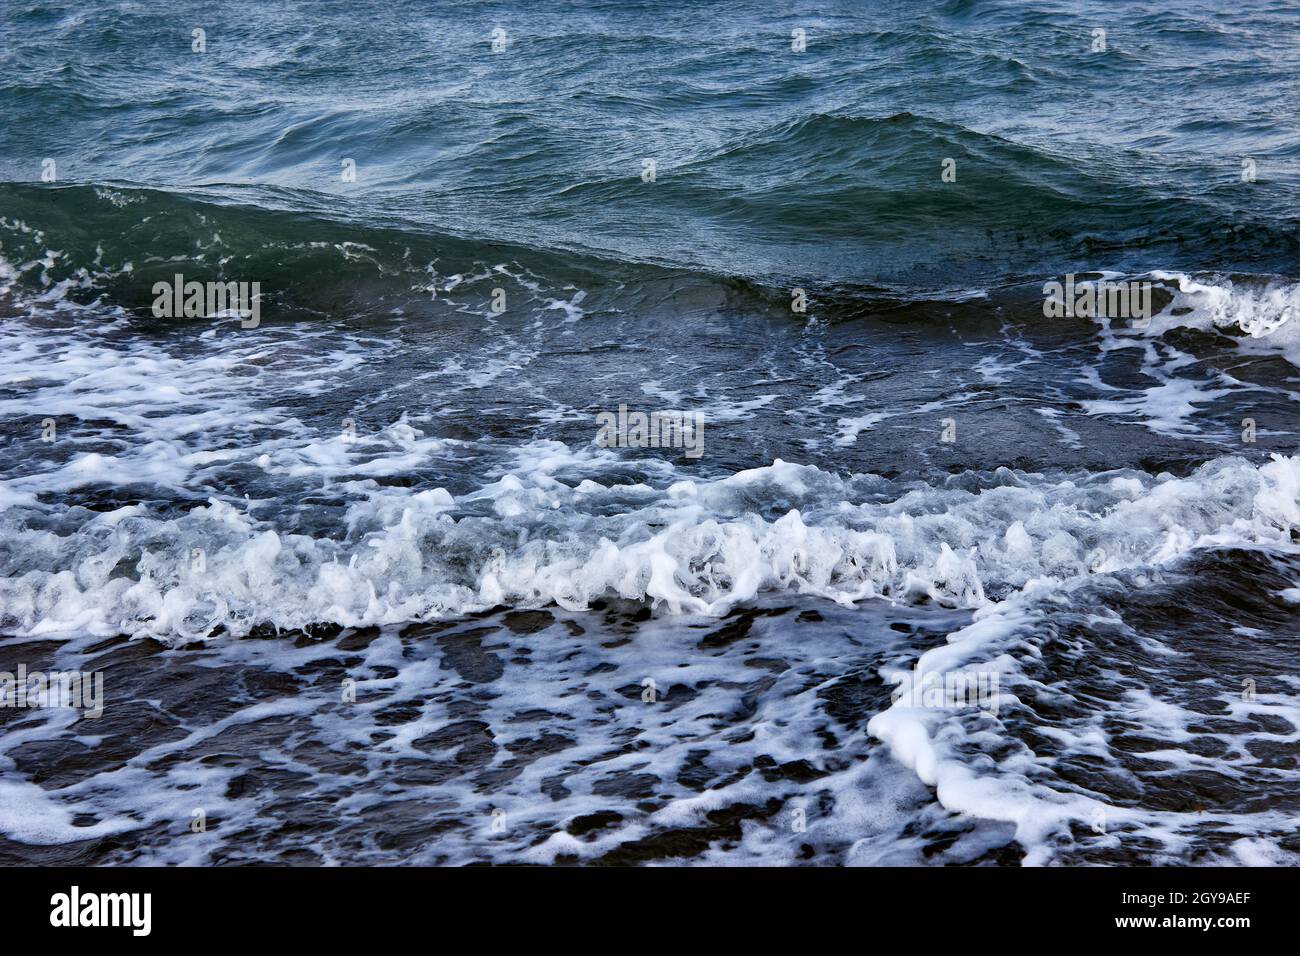 Wellen auf der Wasseroberfläche. Dunkles Meer, starke Wellen mit hellweißem Meeresschaum. Das tobende Meer bei schlechtem Wetter. Eine eingehende Welle aus nächster Nähe. Stockfoto